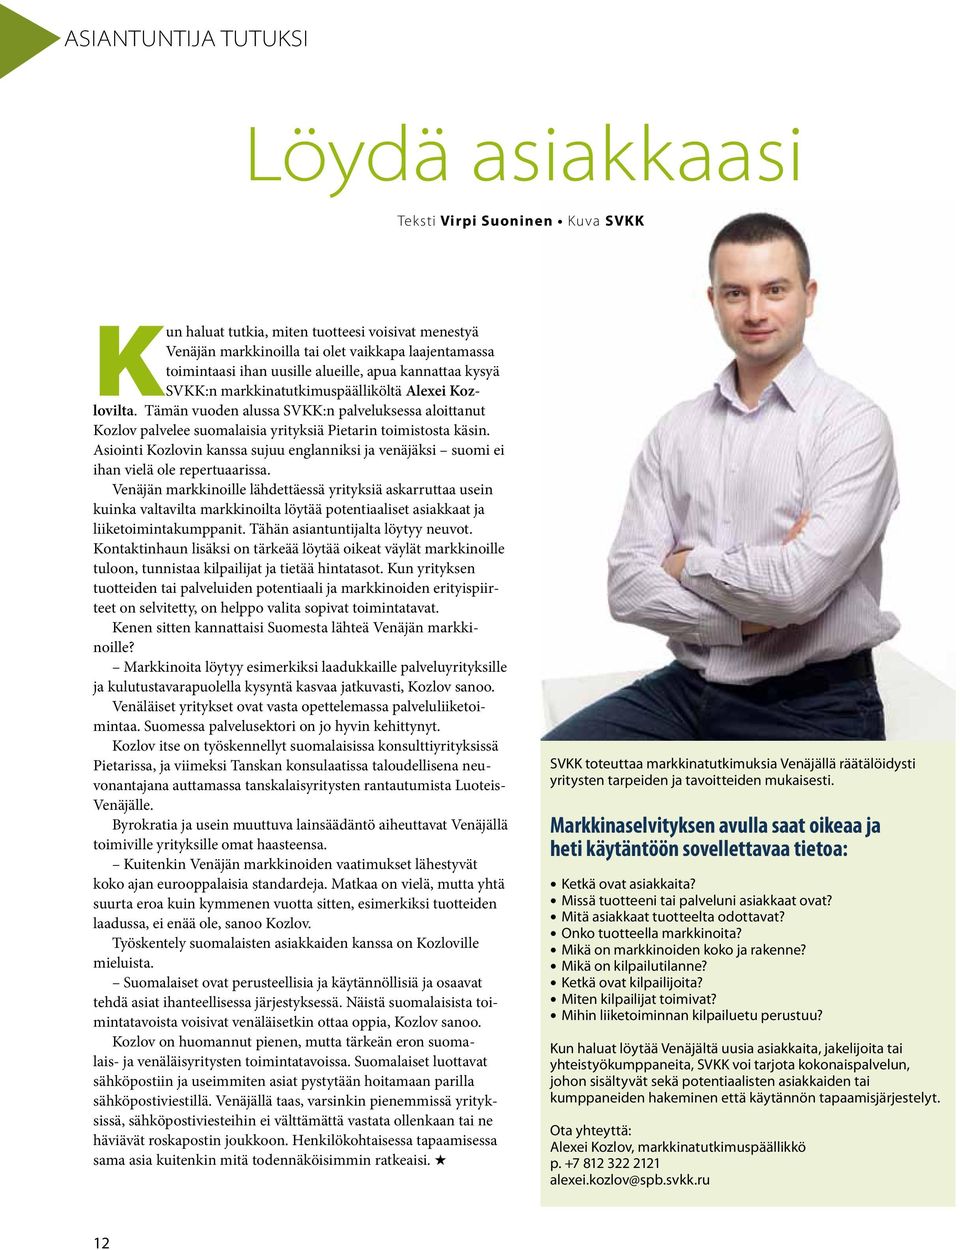 Tämän vuoden alussa SVKK:n palveluksessa aloittanut Kozlov palvelee suomalaisia yrityksiä Pietarin toimistosta käsin.